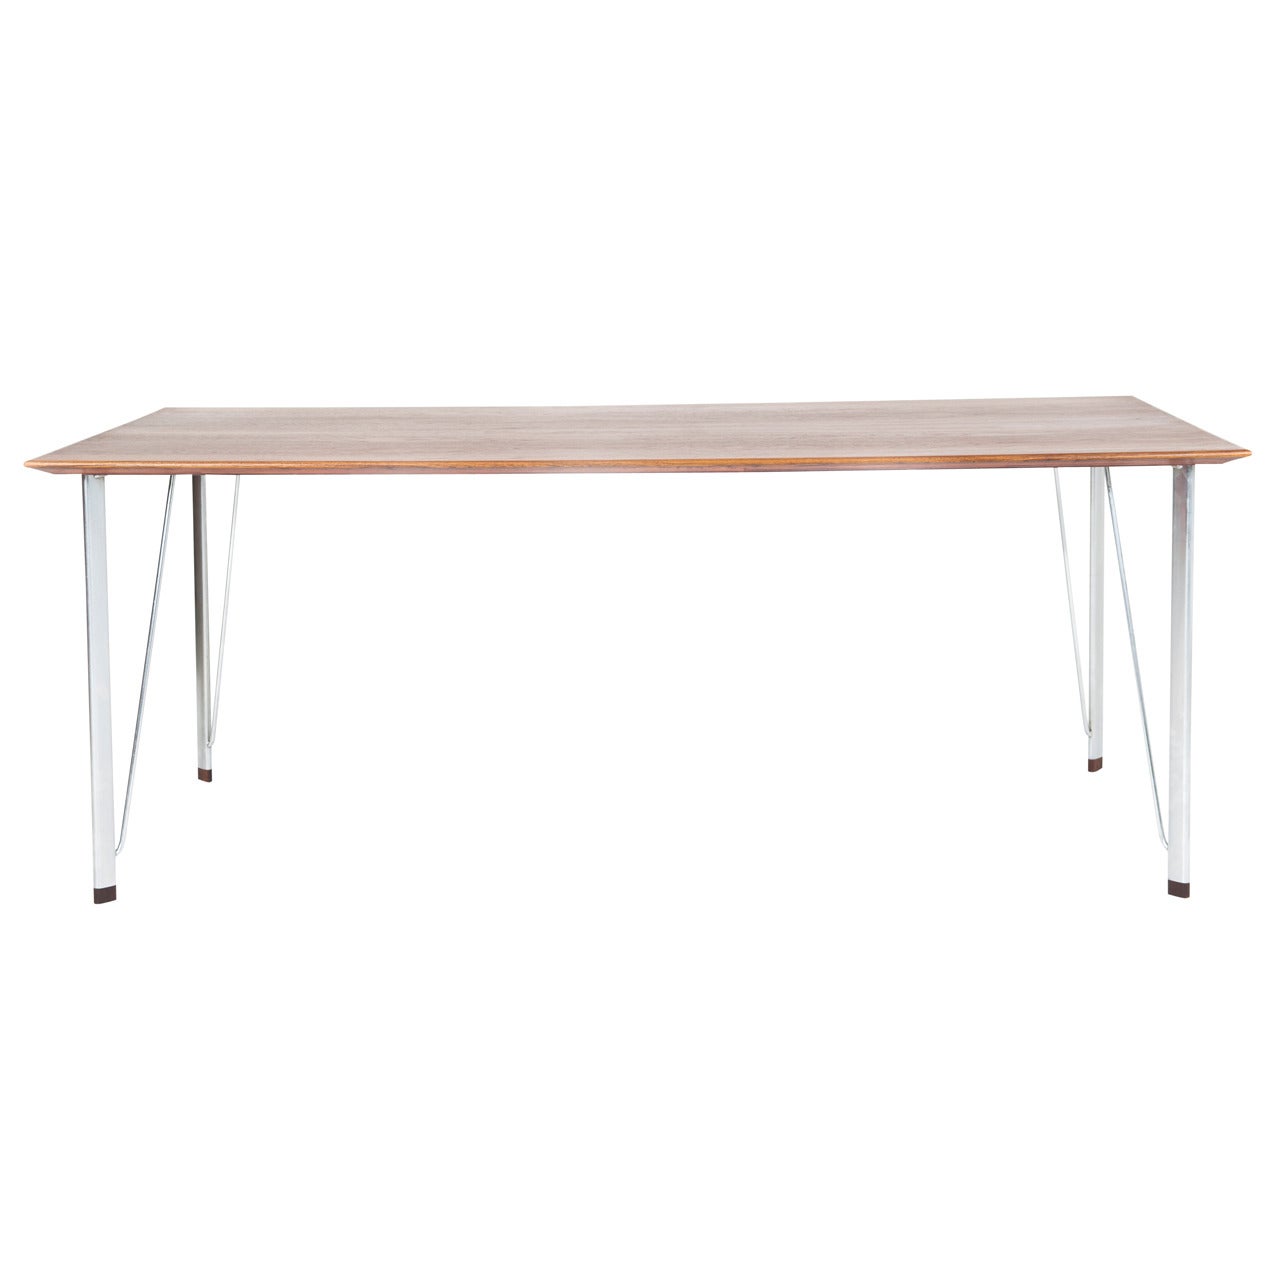 Arne Jacobsen Teak Table, Model 3605